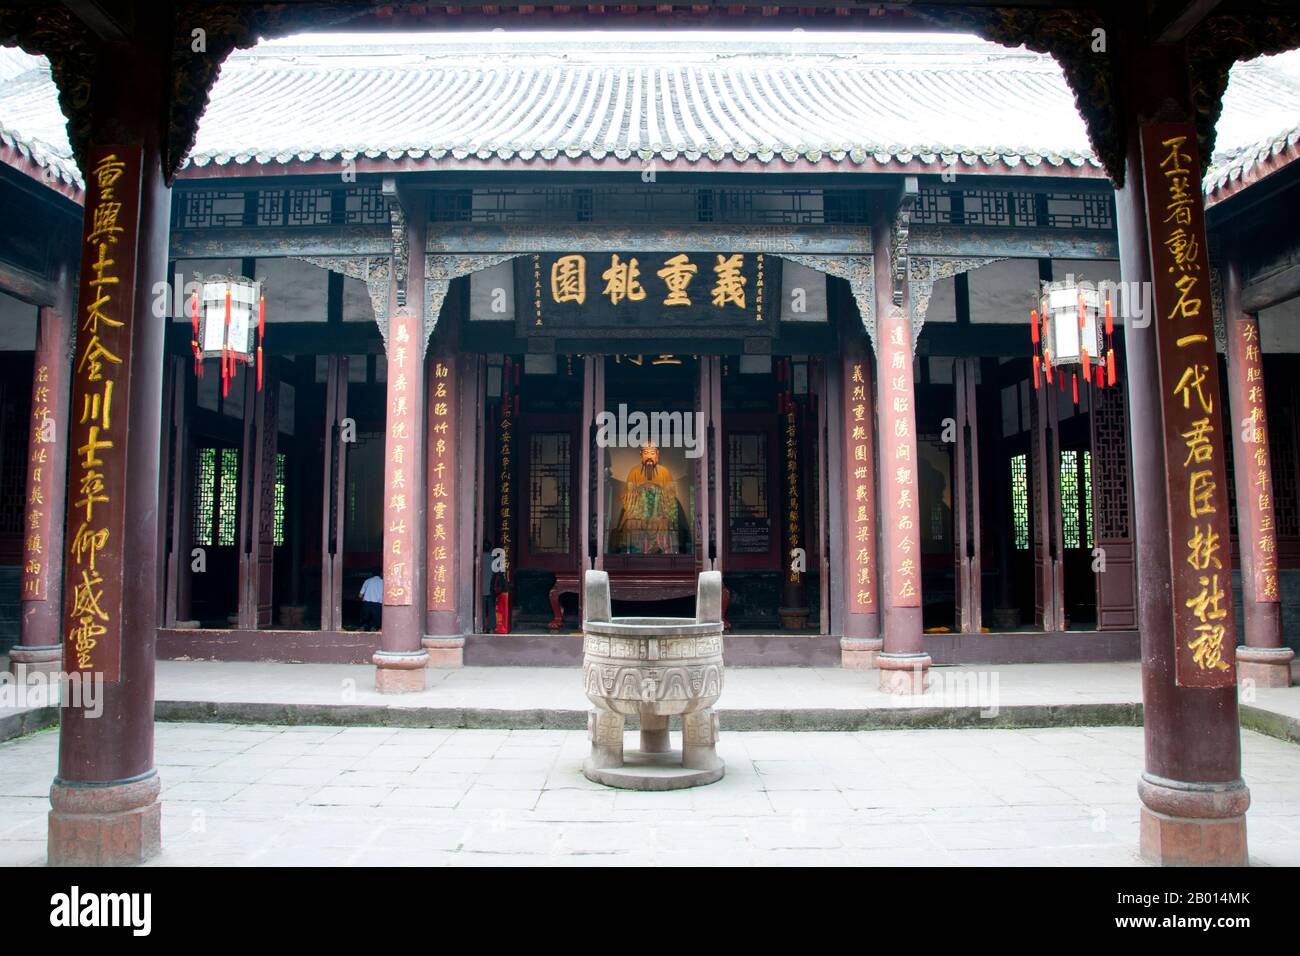 China: Wuhou CI (Wuhou Ancestral oder Gedenkhalle), Chengdu, Provinz Sichuan. Wuhou CI ist Zhuge Liang, dem Helden des Klassikers „die Romantik der drei Königreiche“, und seinem Kaiser Liu bei gewidmet. Zhuge Liang (181–234) war Kanzler von Shu Han während der Zeit der drei Königreiche der chinesischen Geschichte. Er wird oft als der größte und versierteste Stratege seiner Zeit anerkannt. Chengdu, früher bekannt als Chengtu, ist die Hauptstadt der Provinz Sichuan im Südwesten Chinas. Im frühen 4. Jahrhundert v. Chr. verlegte der 9. Kaiming-König des alten Shu seine Hauptstadt an den heutigen Standort der Stadt. Stockfoto